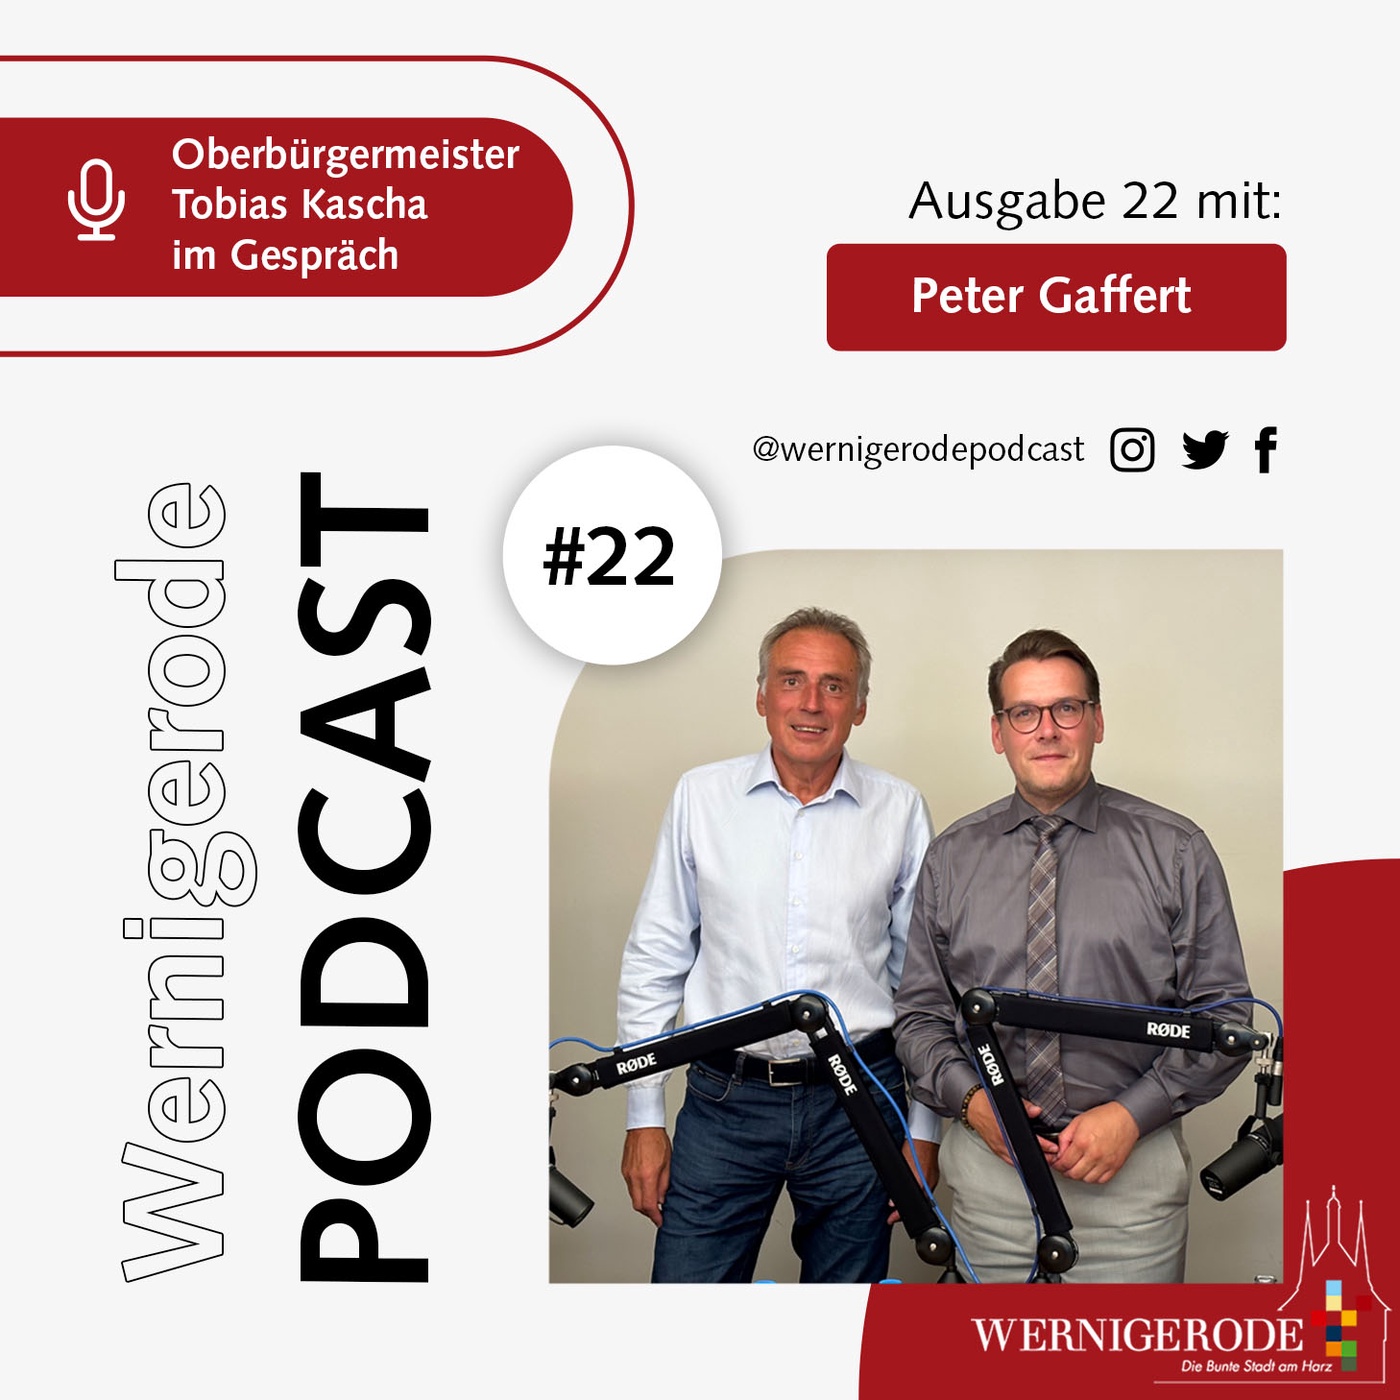 Wernigerode Podcast  #22 - Oberbürgermeister Tobias Kascha im Gespräch mit Peter Gaffert.